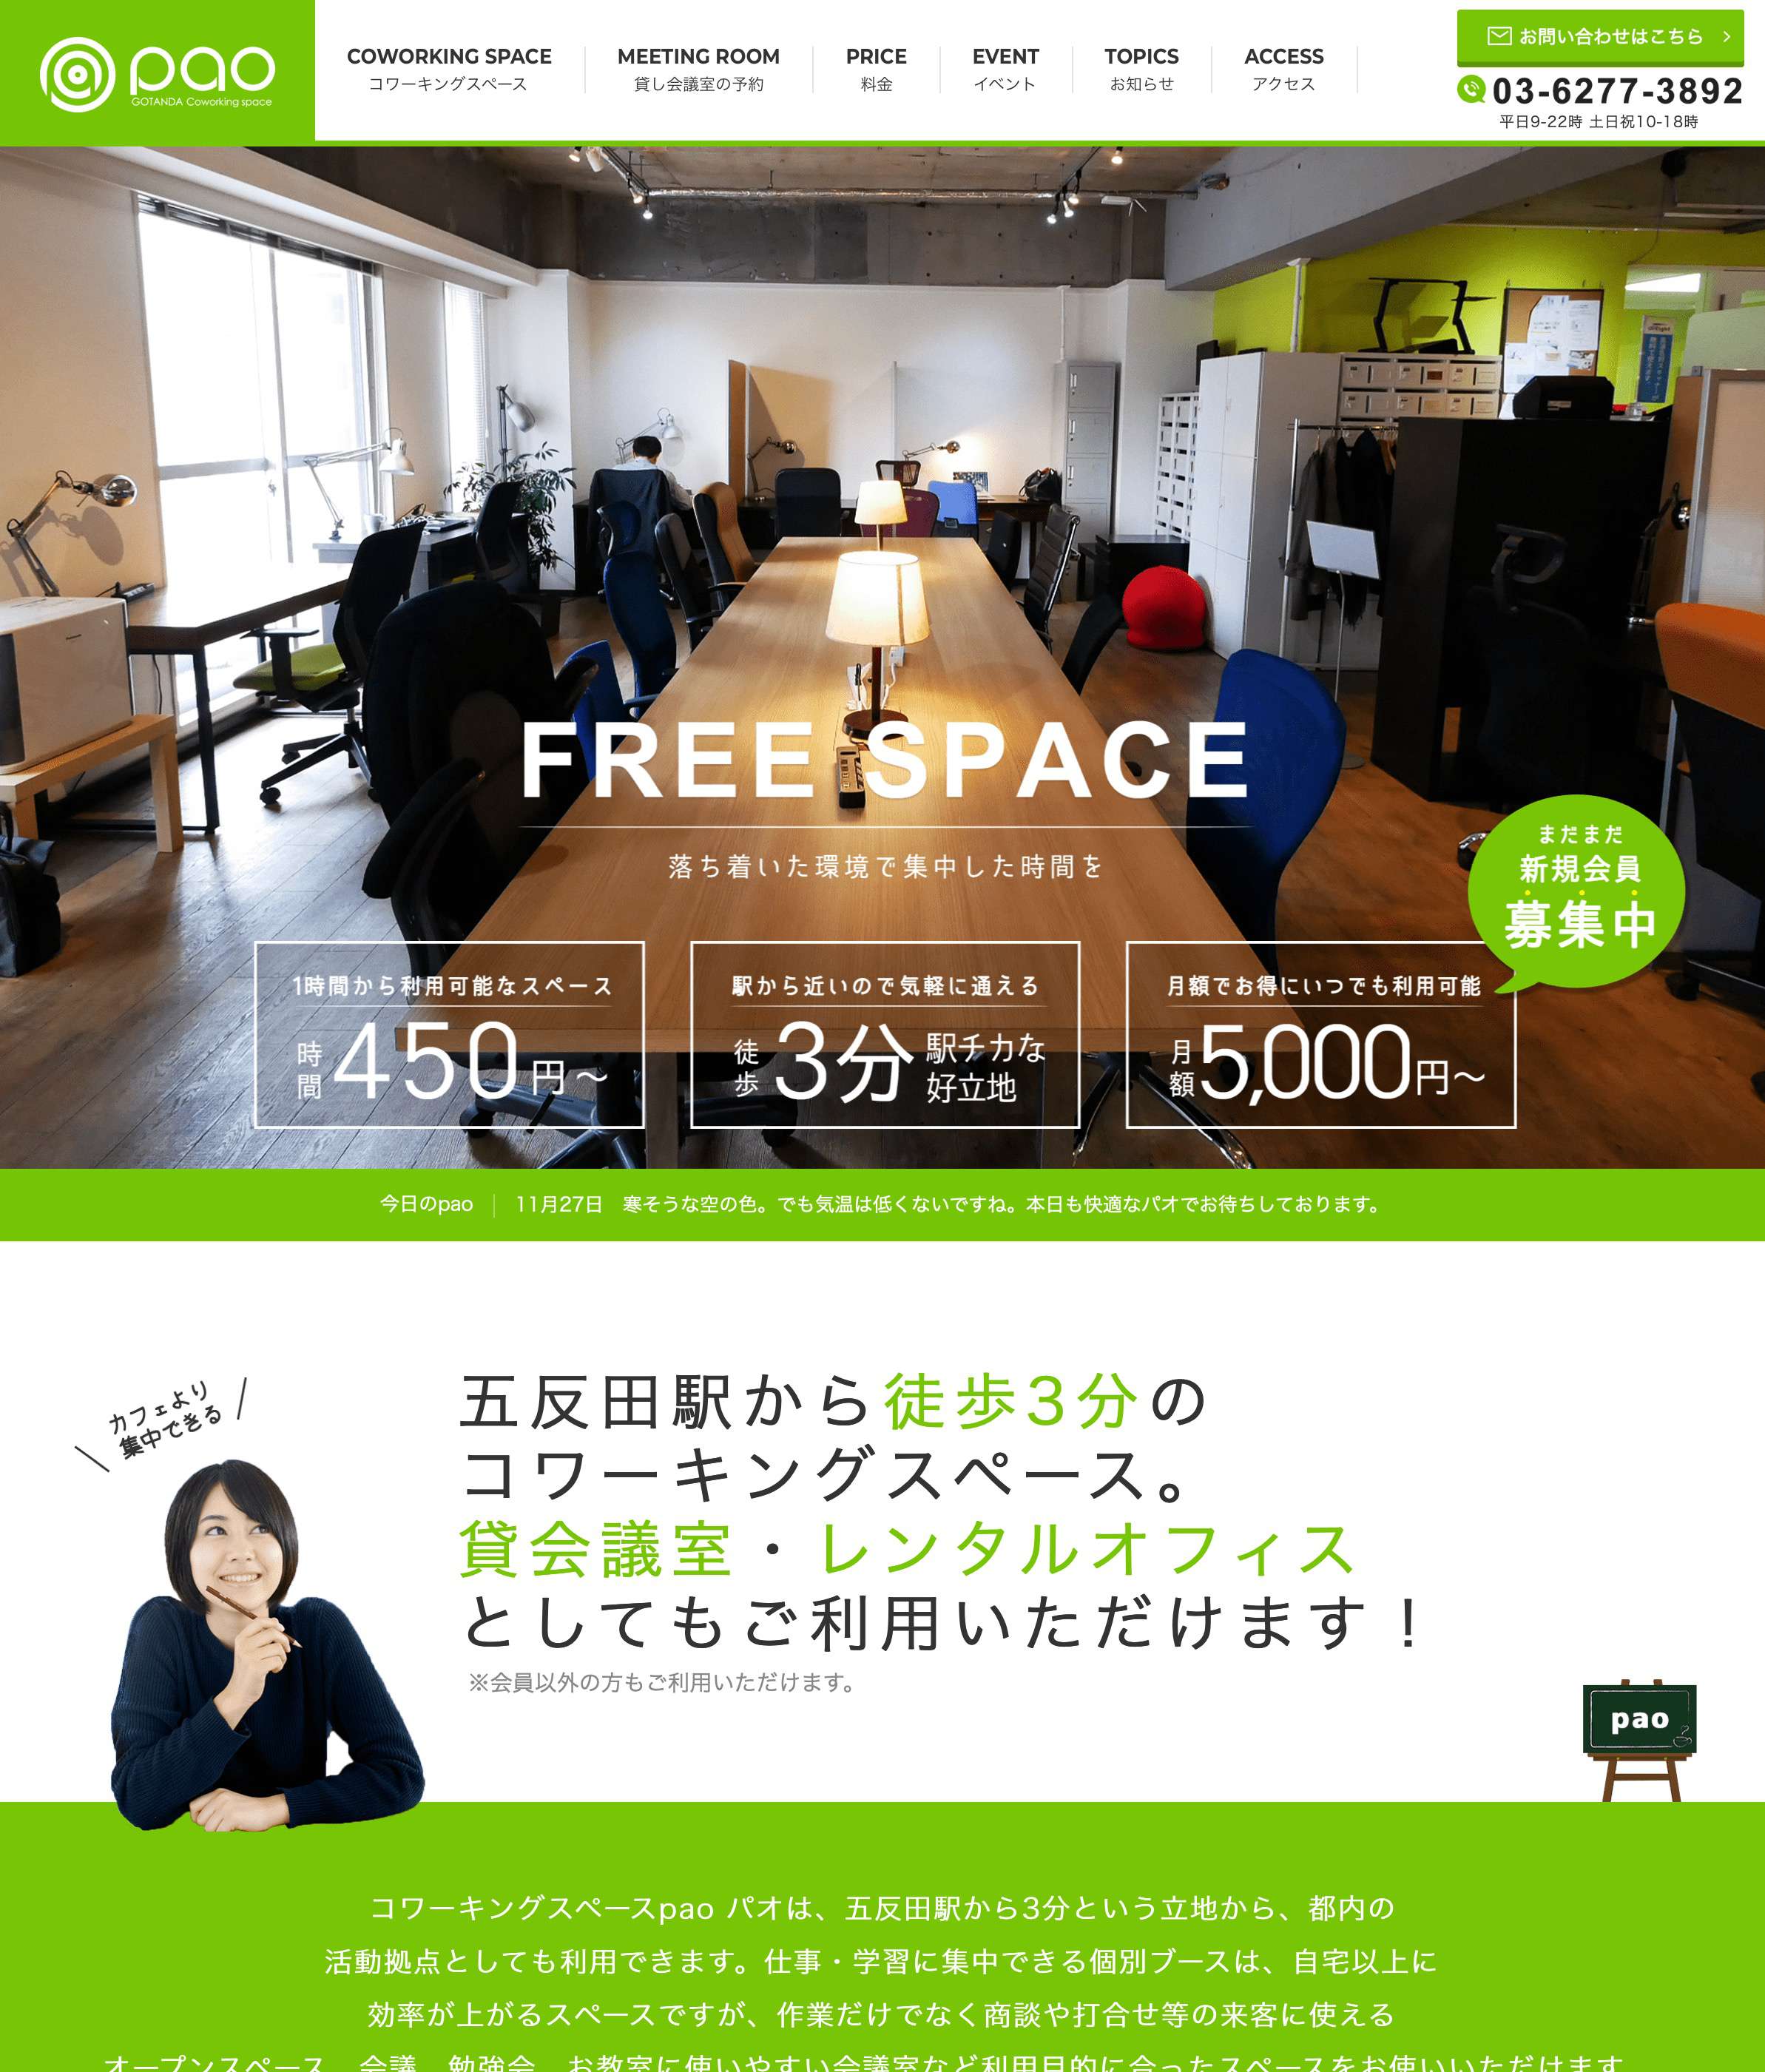 品川区五反田コワーキングスペース・貸会議室 Pao様公式サイト